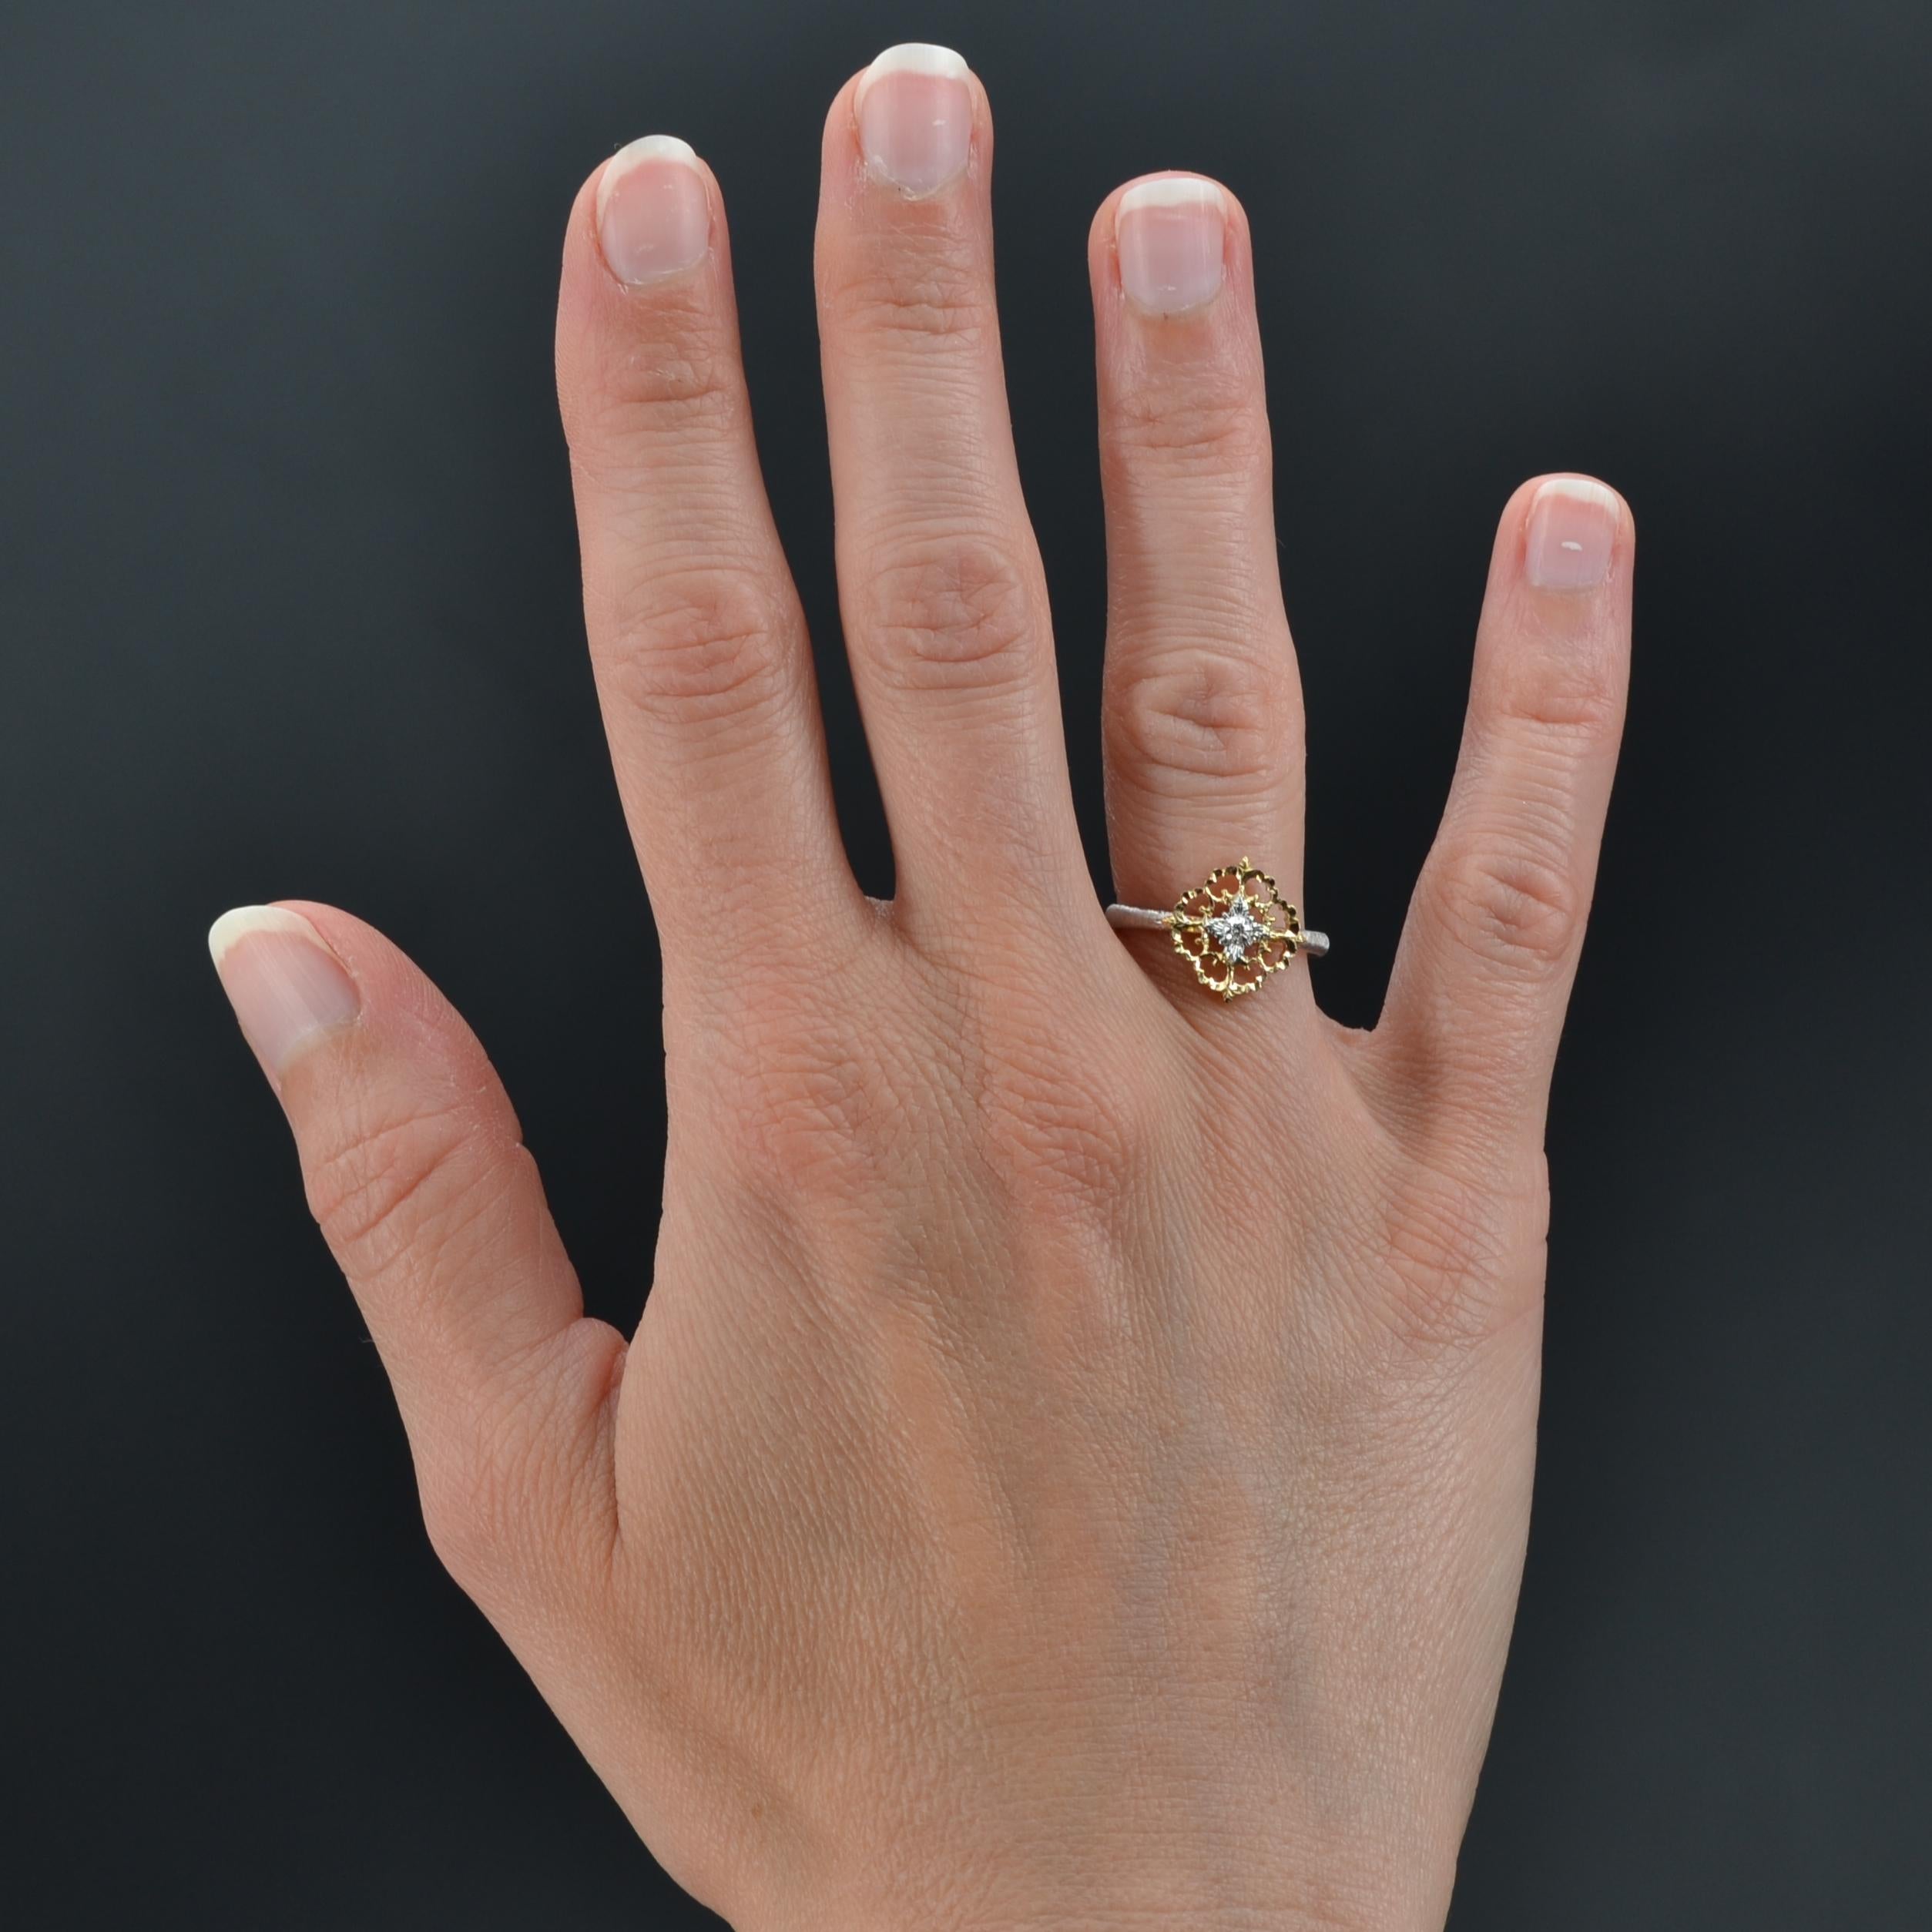 Ring aus 18 Karat Gelb- und Weißgold.
Dieser charmante Ring aus 2 Goldarten besteht aus einem flachen, gebohrten Muster, das mit Arabesken gemeißelt und mit einem modernen Diamanten im Brillantschliff verziert ist. Der Ring ist aus ziseliertem